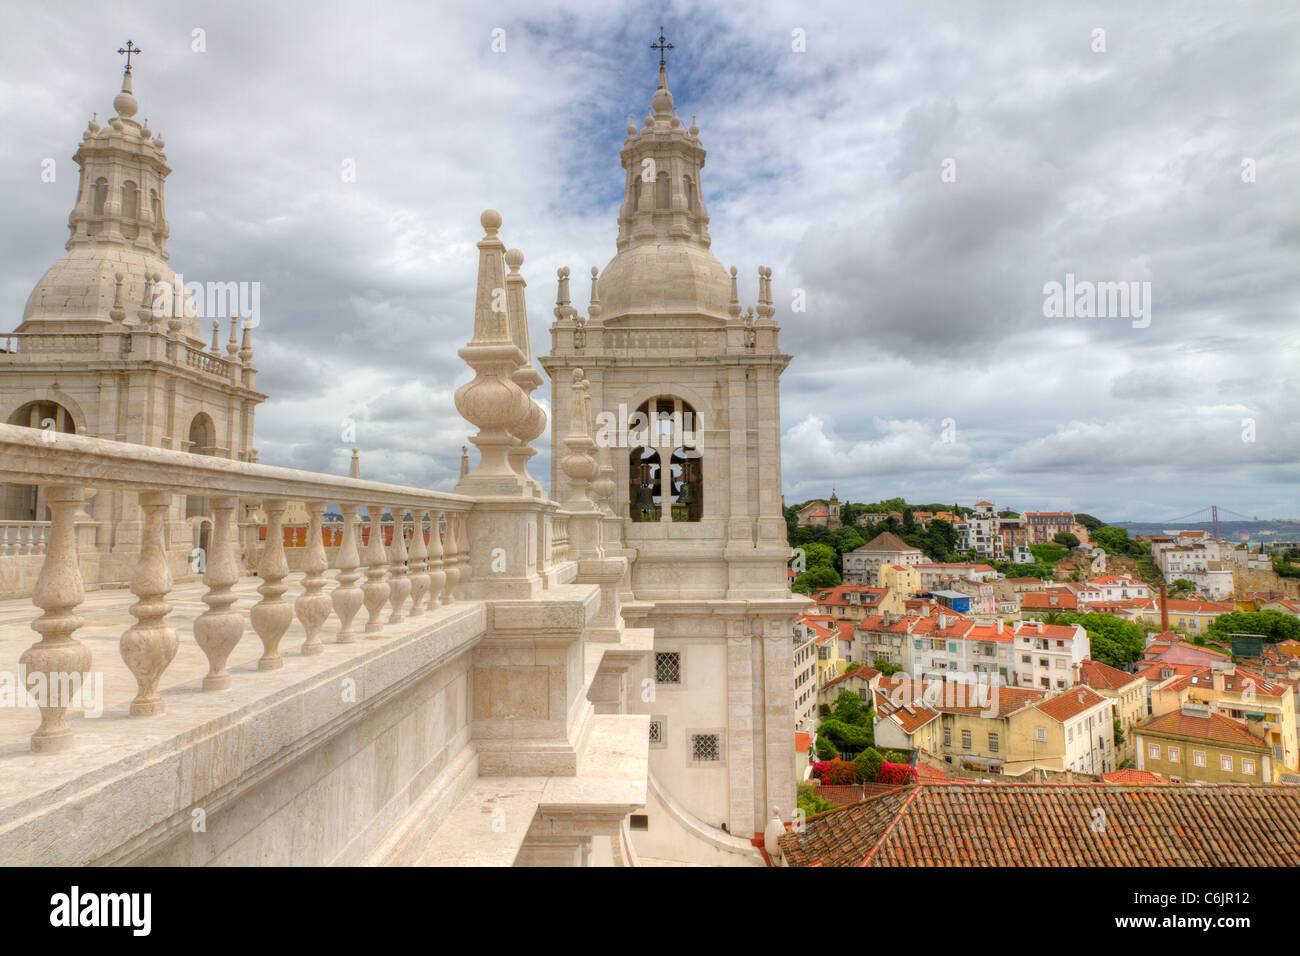 Tetto bianco con decorazioni e la torre campanaria in stile manieristico di Lisbona, Portogallo Foto Stock